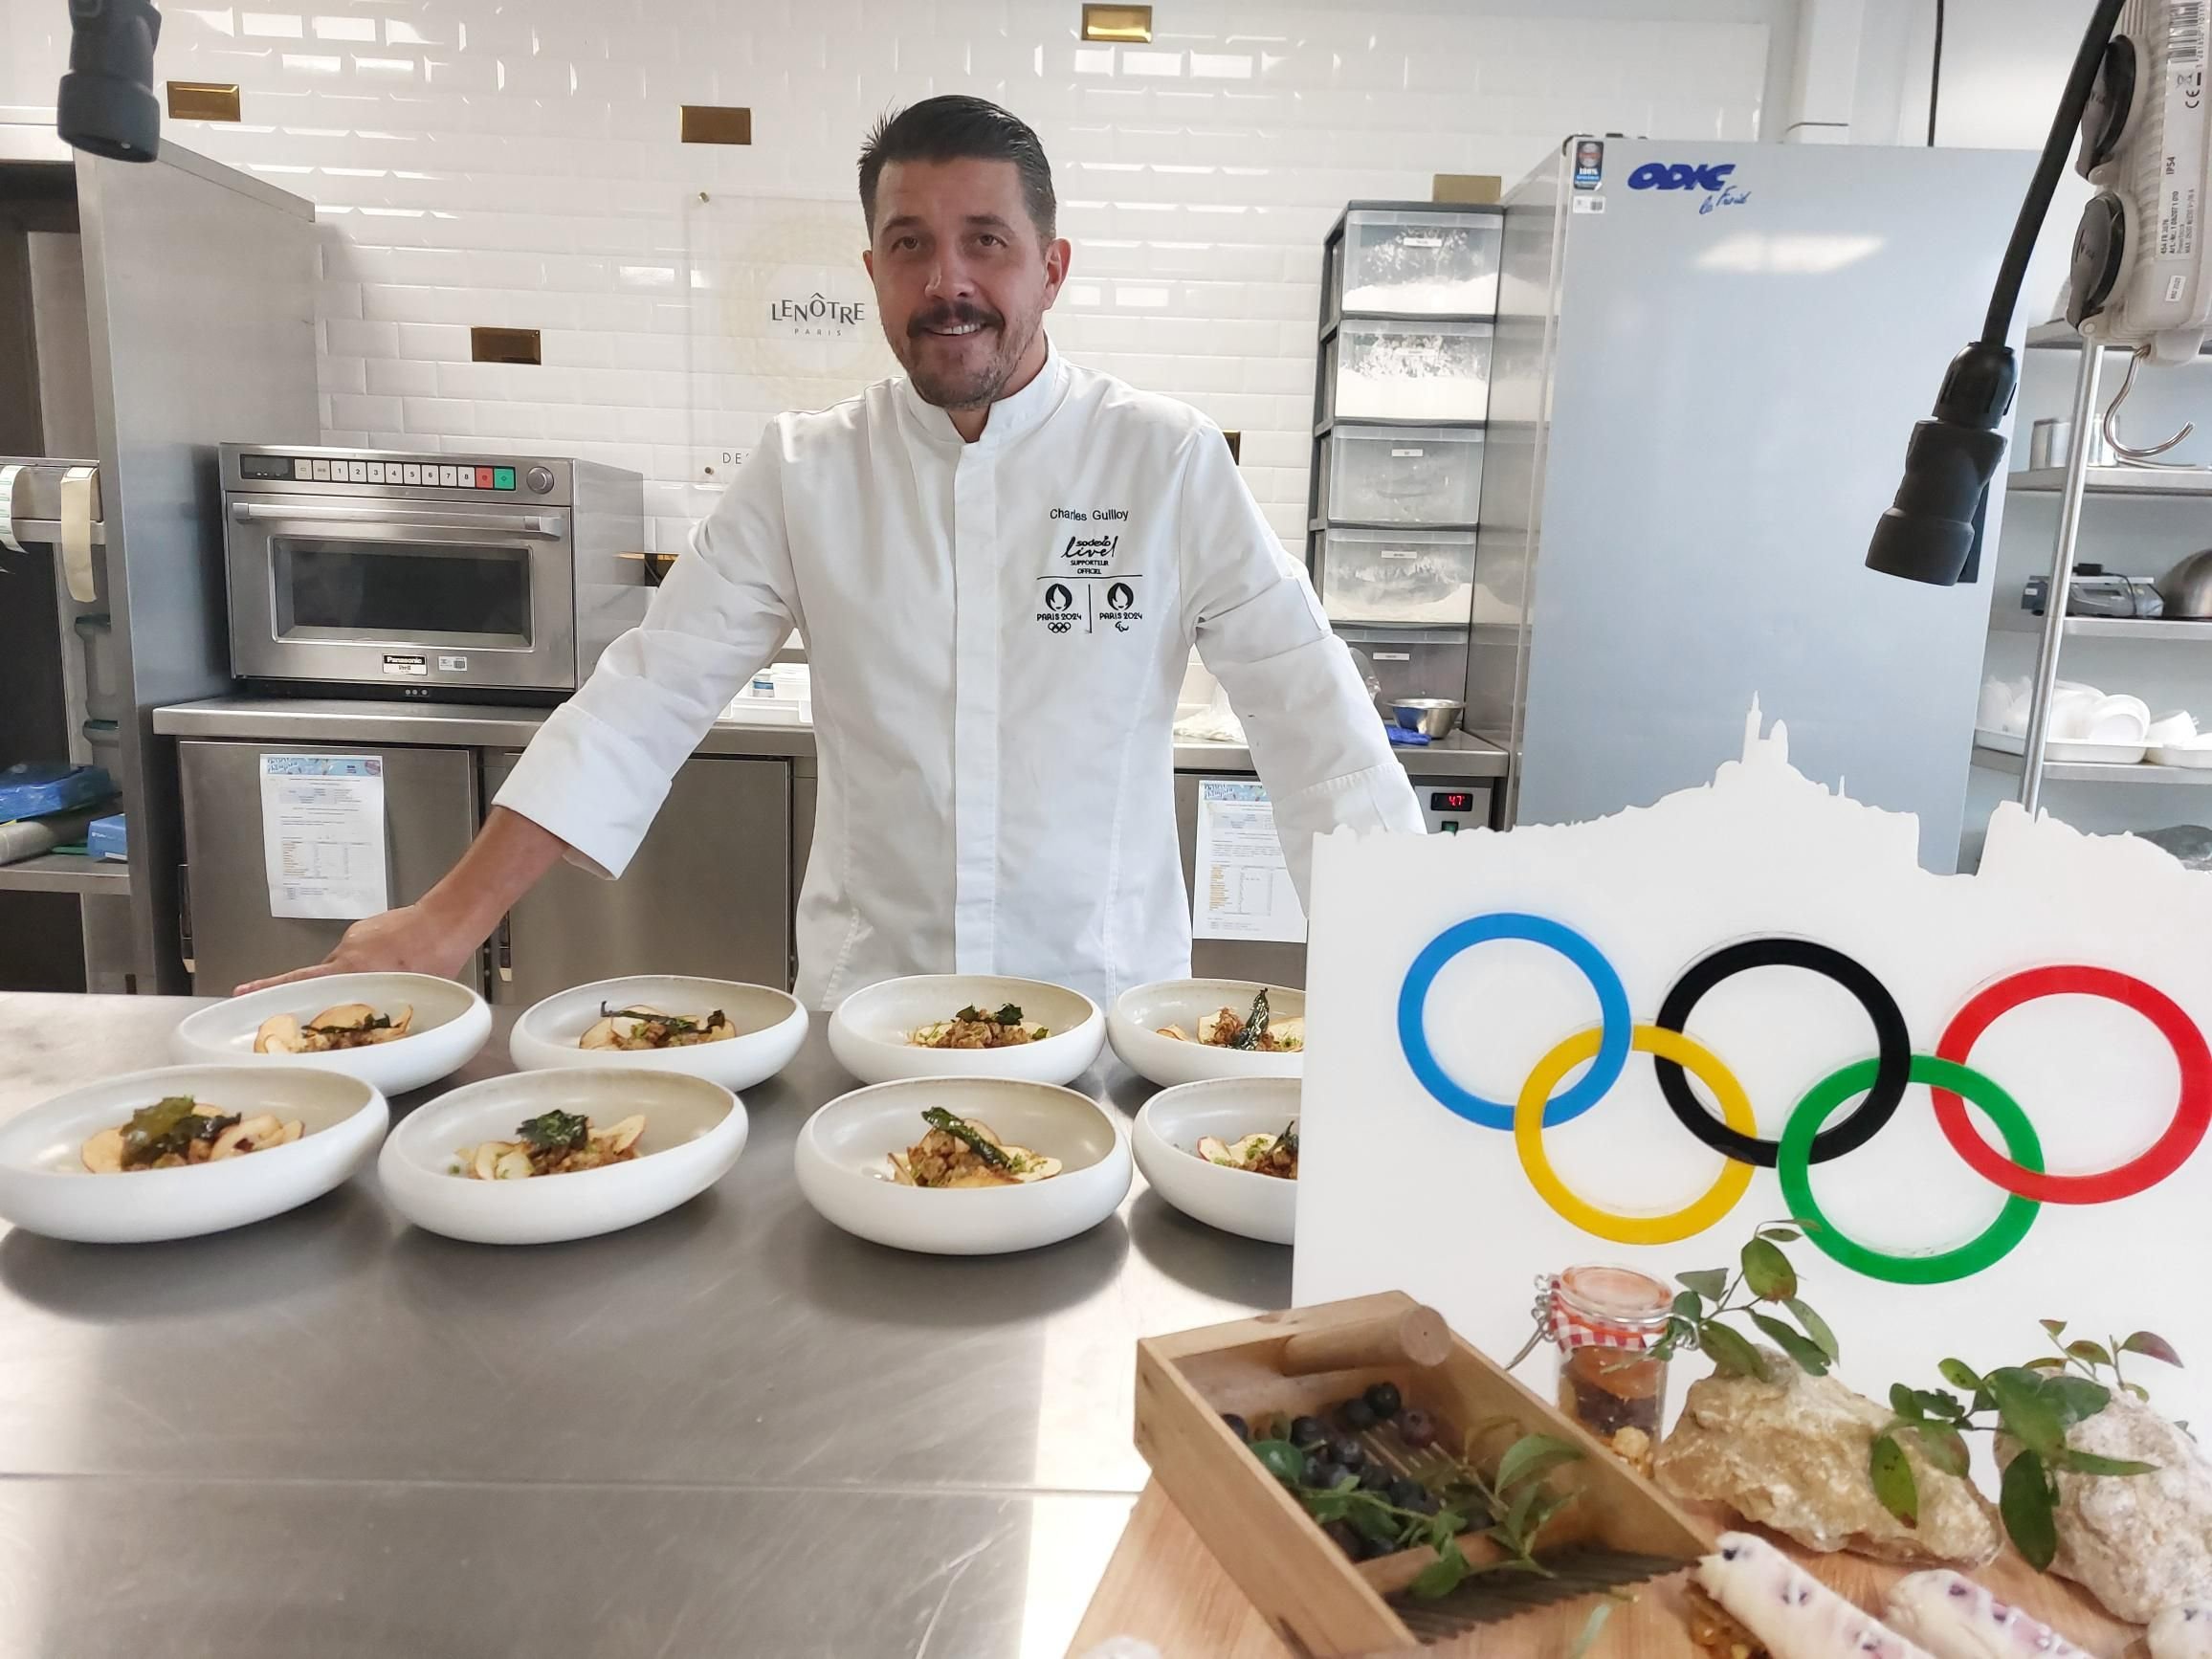 École des arts culinaires Lenôtre à Rungis (Val-de-Marne), jeudi 30 novembre. Le chef Charles Guilloy a conçu 550 recettes pour les Jeux de Paris 2024. LP/Laure Parny